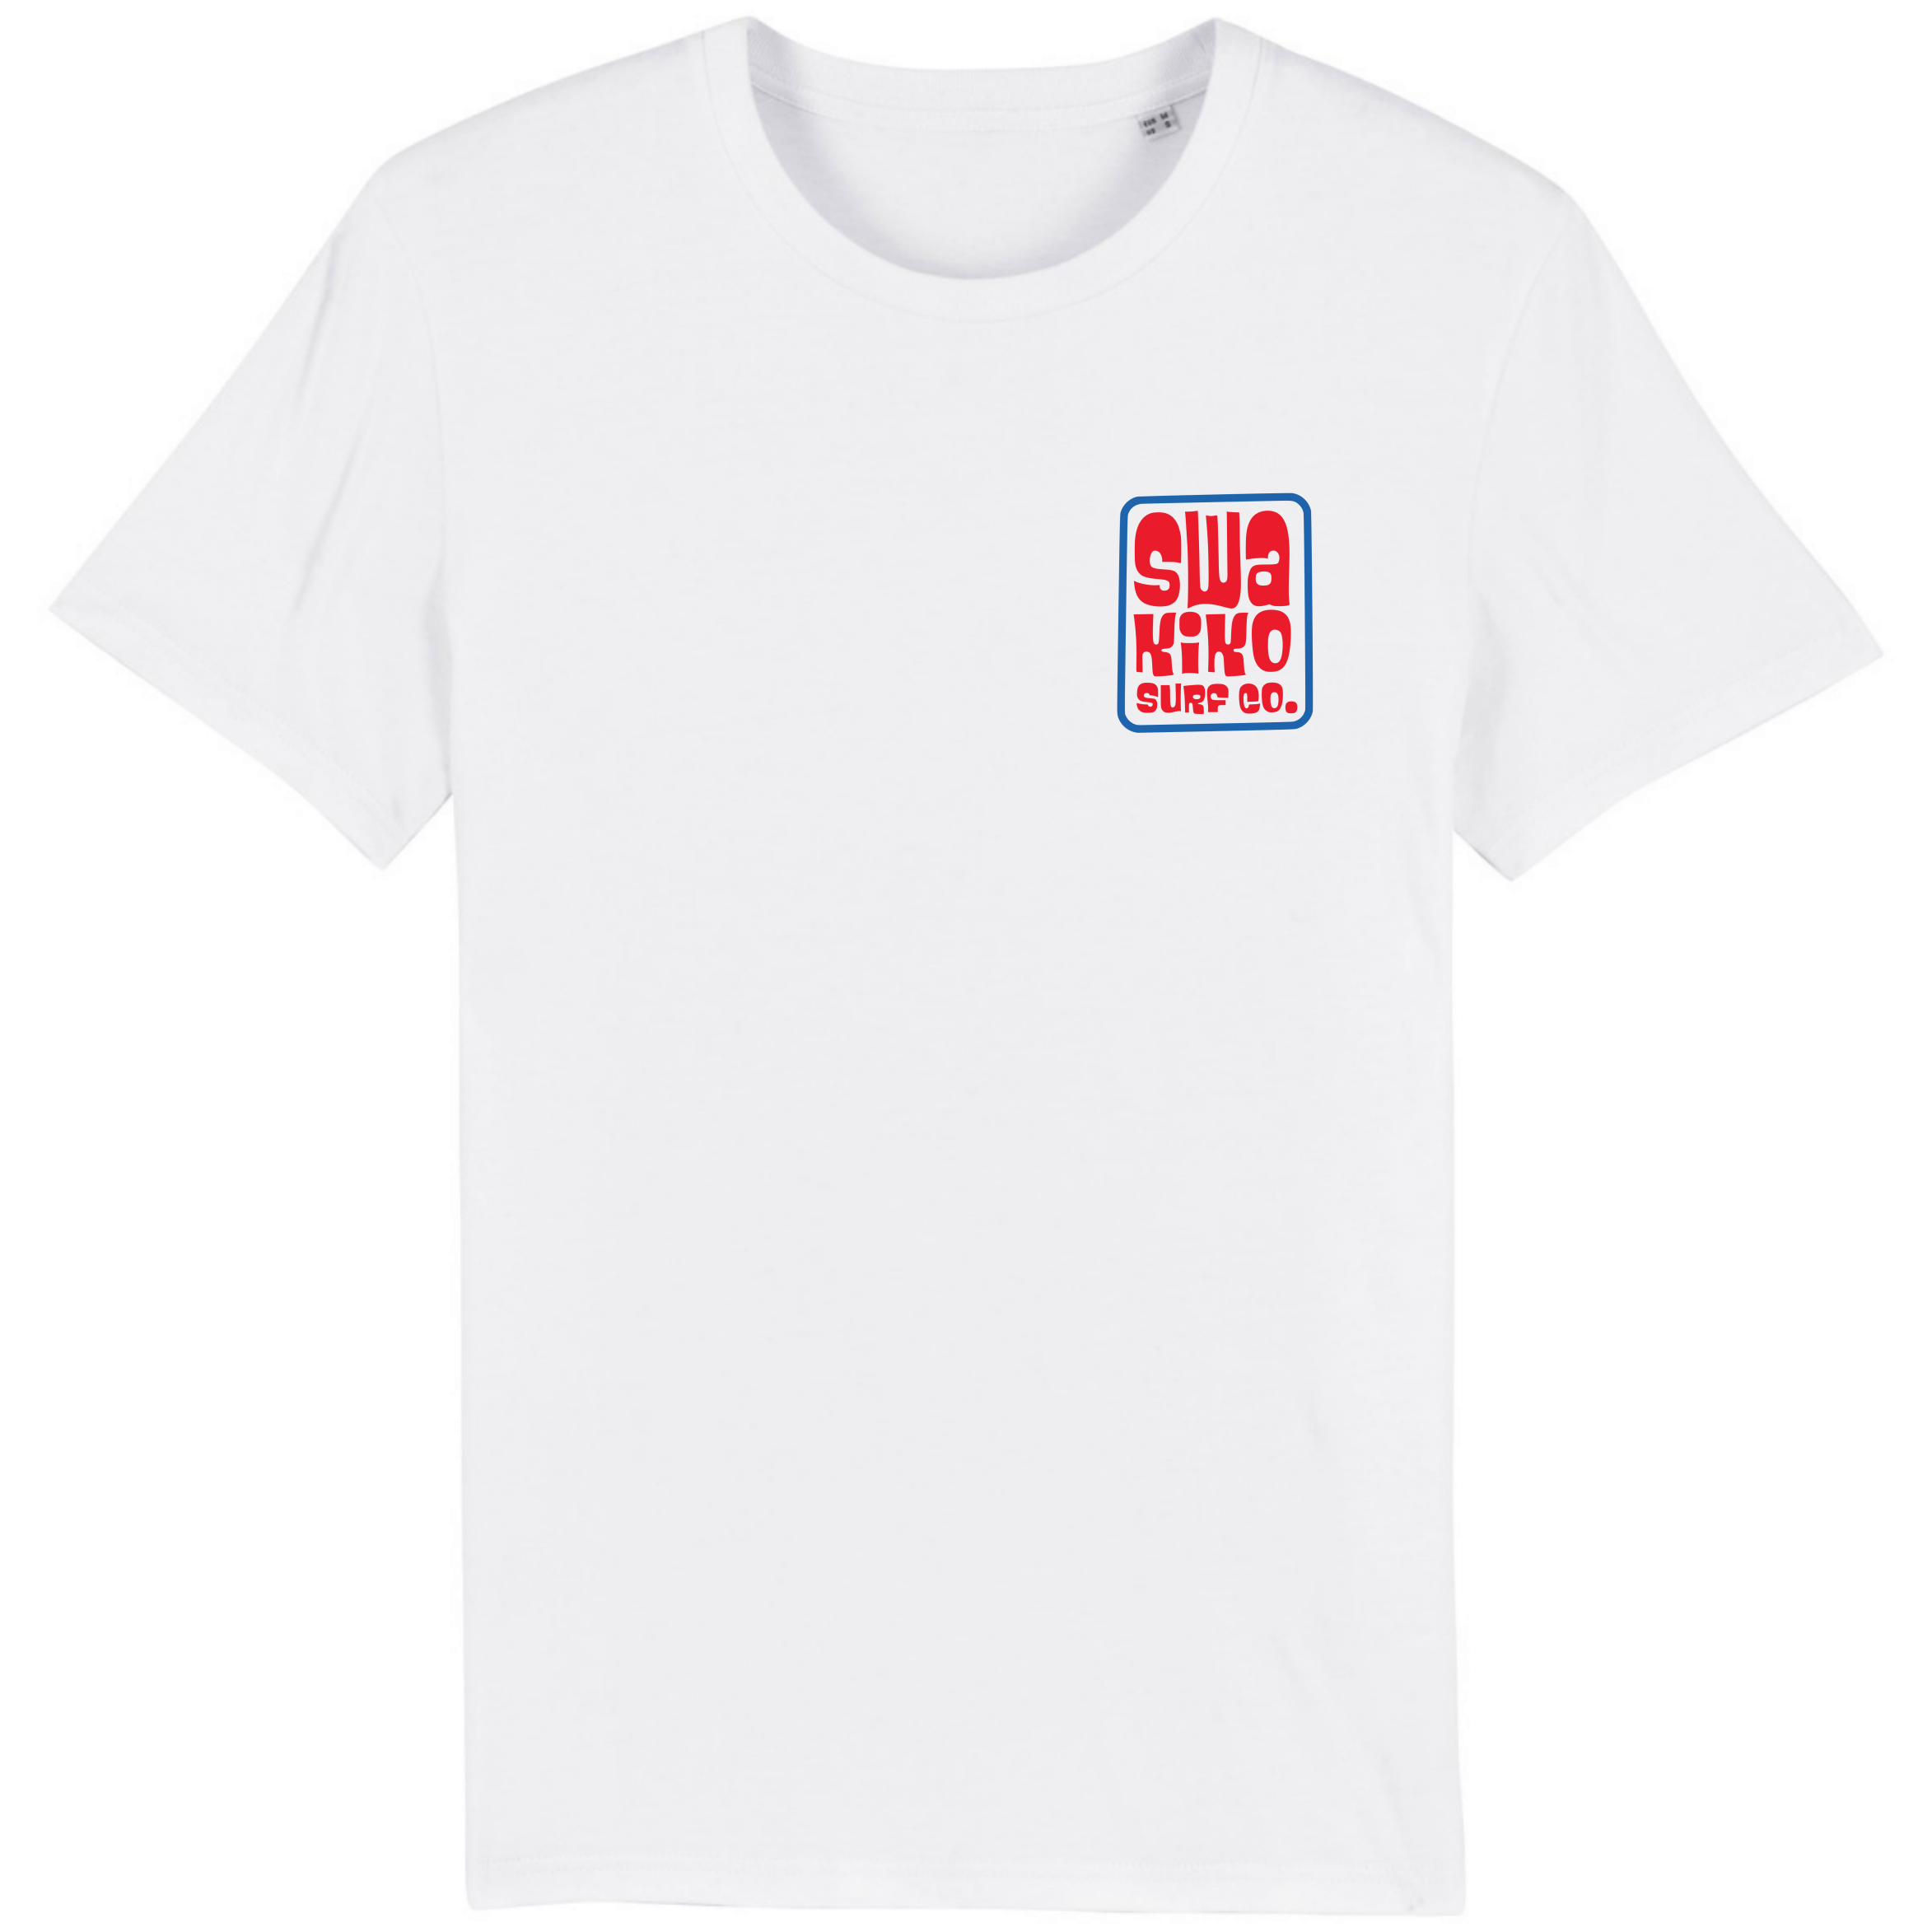 Wit T-shirt met stijlvol golfdesign - Perfecte combinatie van surf en mode